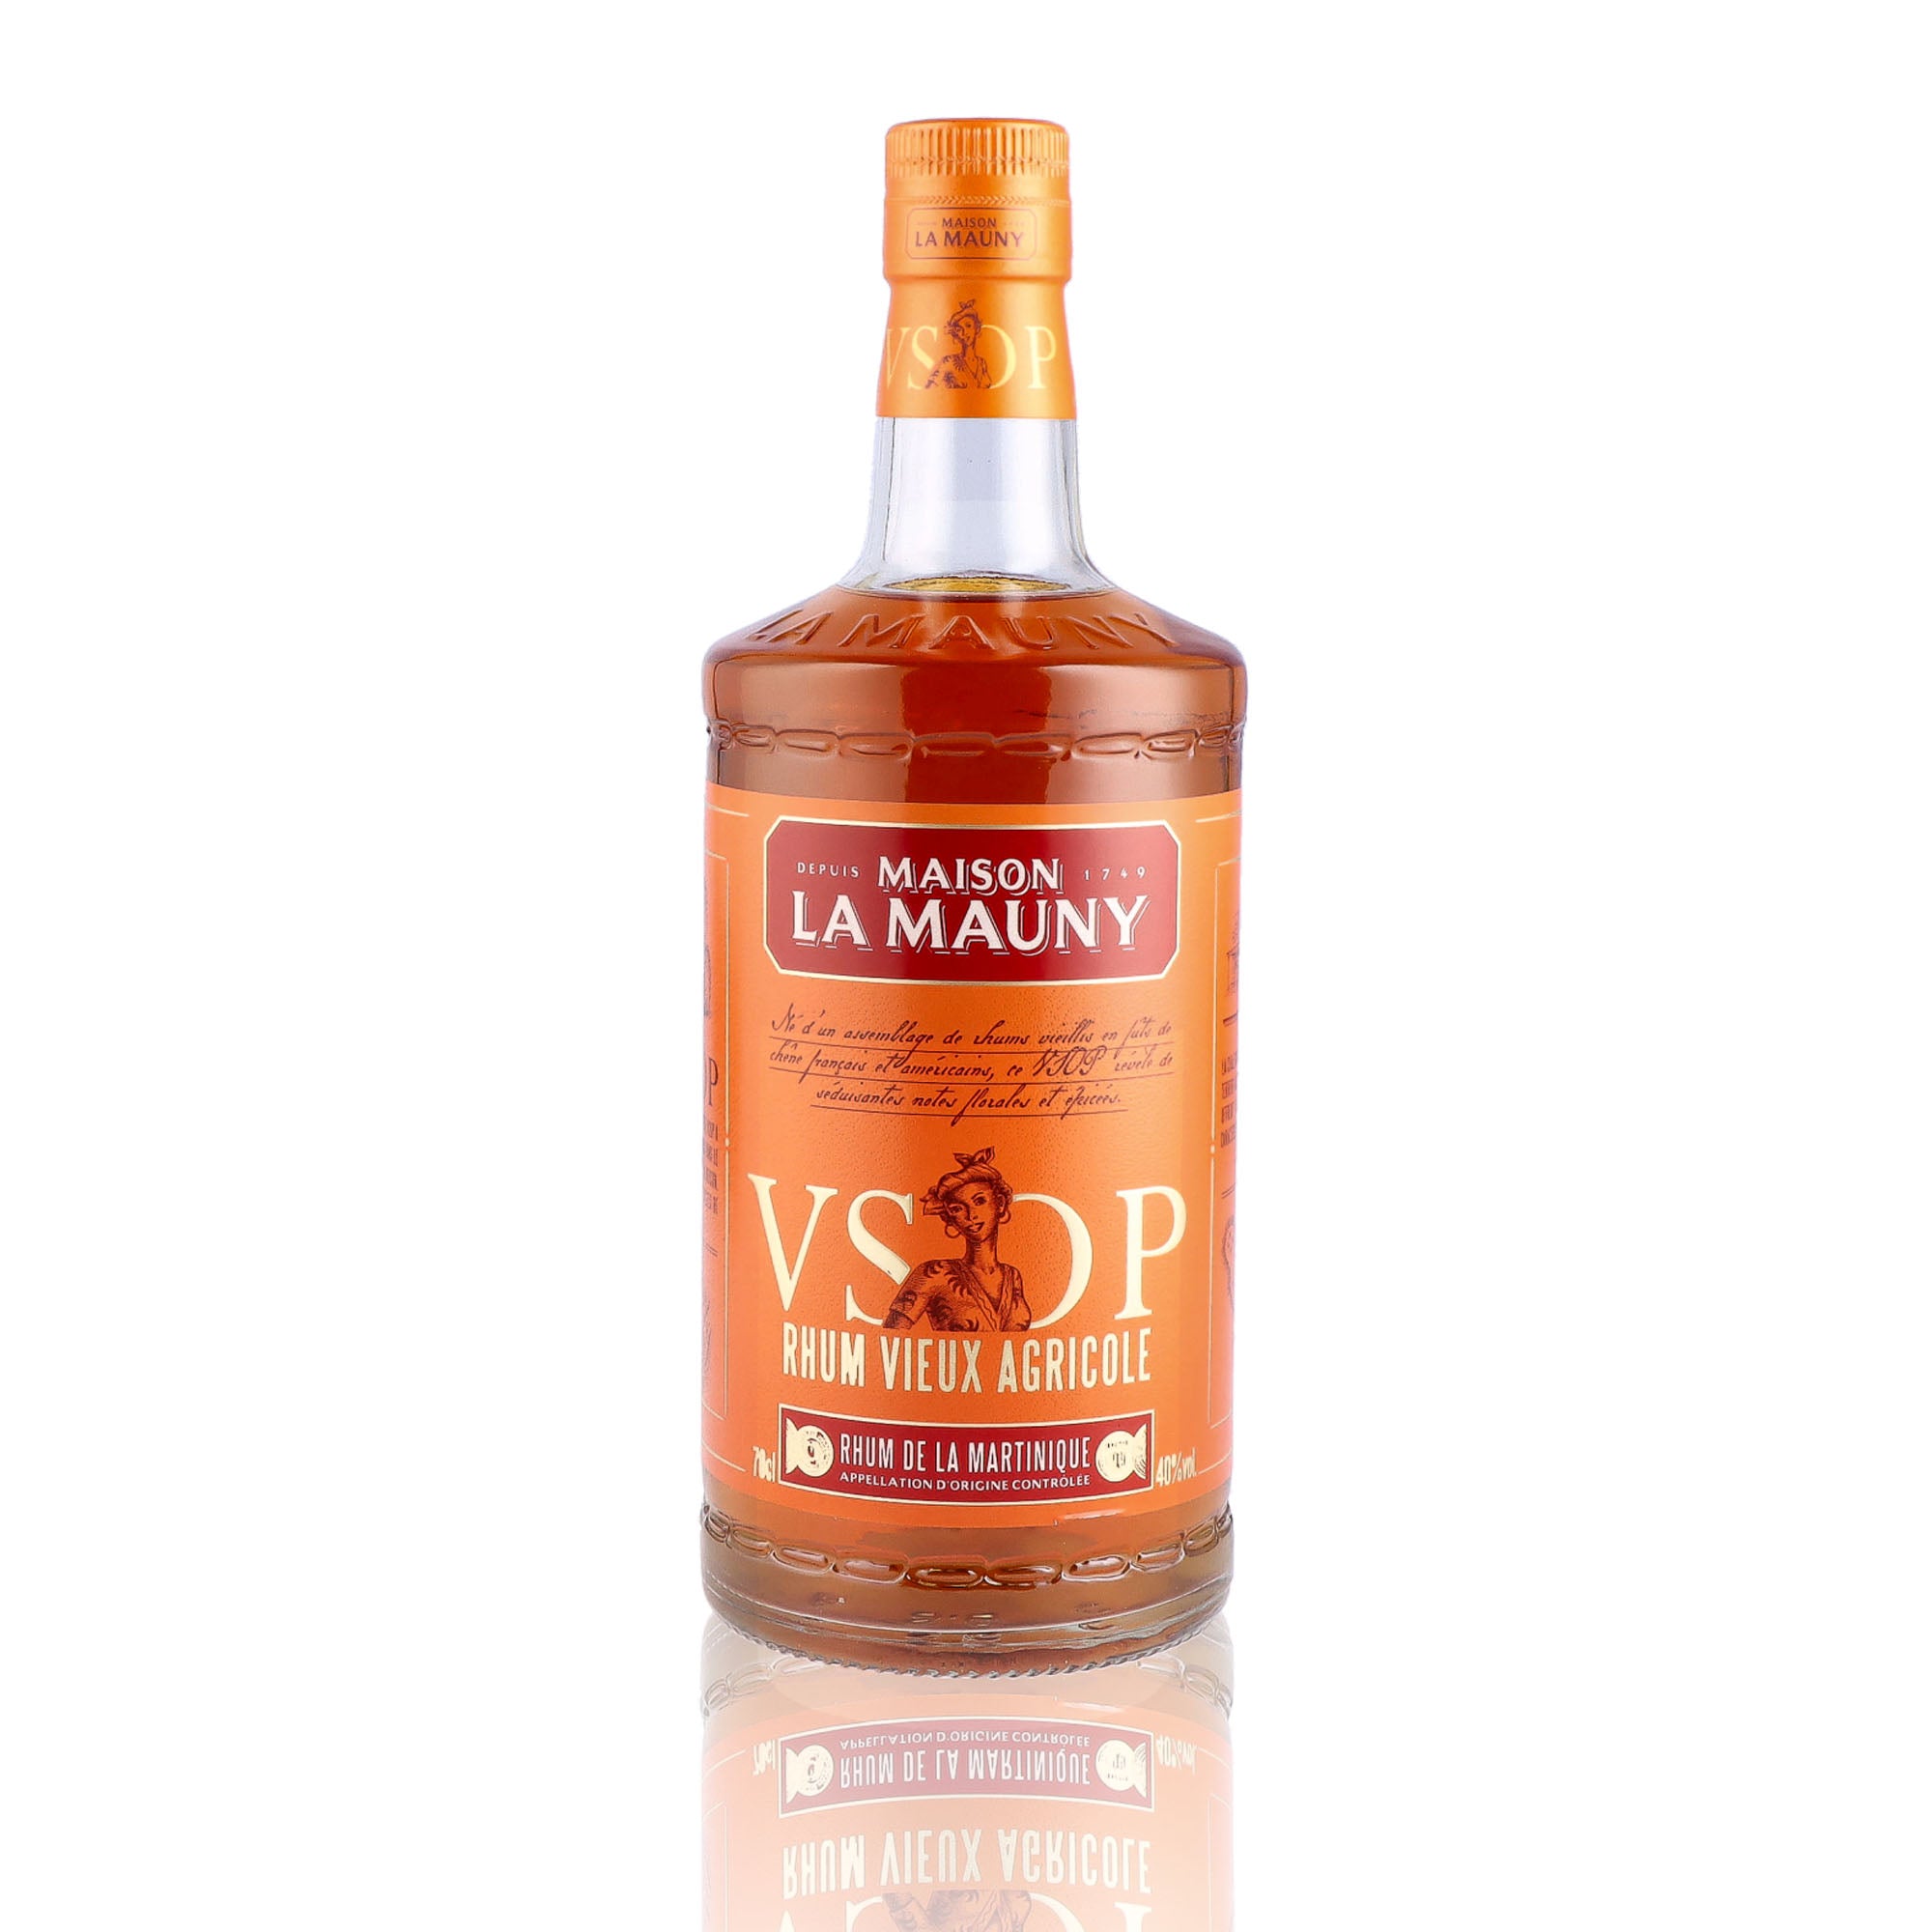 Une bouteille de rhum vieux, de la marque La Mauny, nommée VSOP.